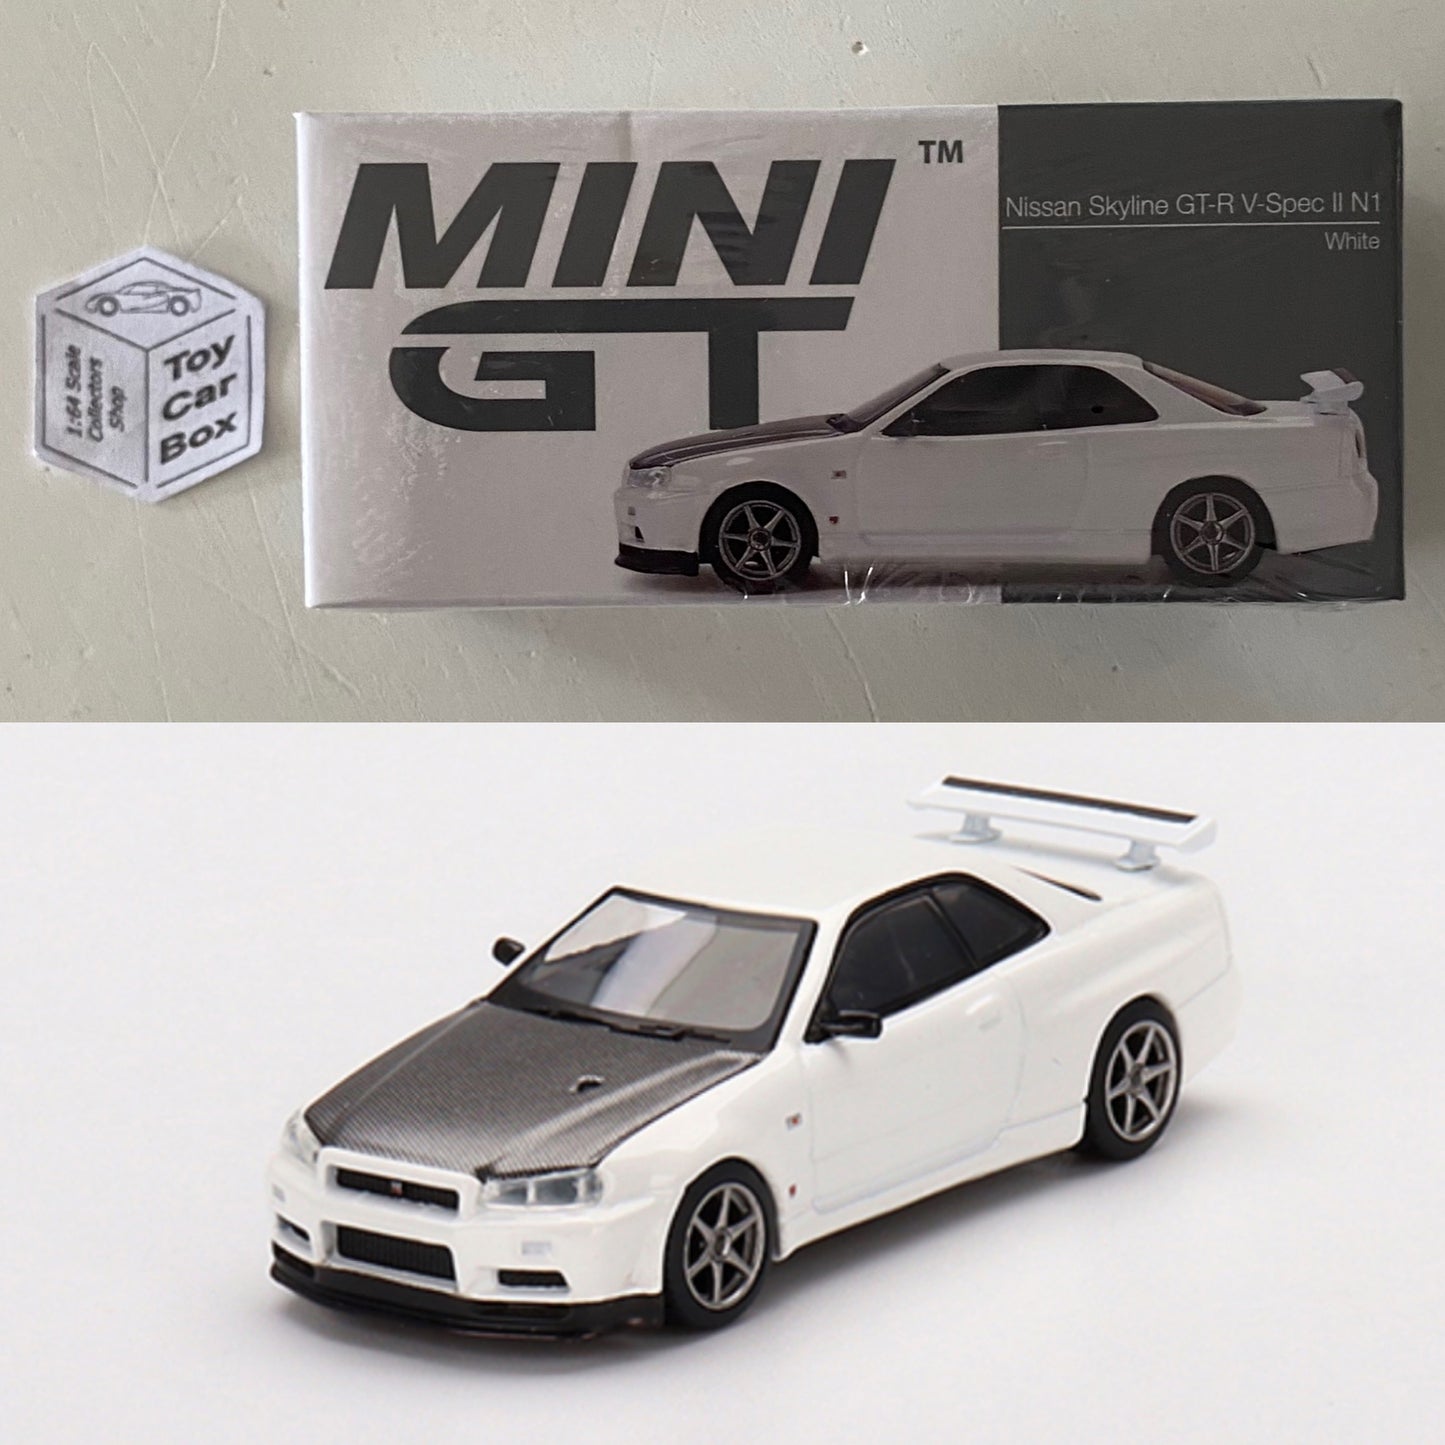 Mini GT #501 - Nissan Skyline GT-R V-Spec II N1 (White - 1/64 - Boxed) M74g